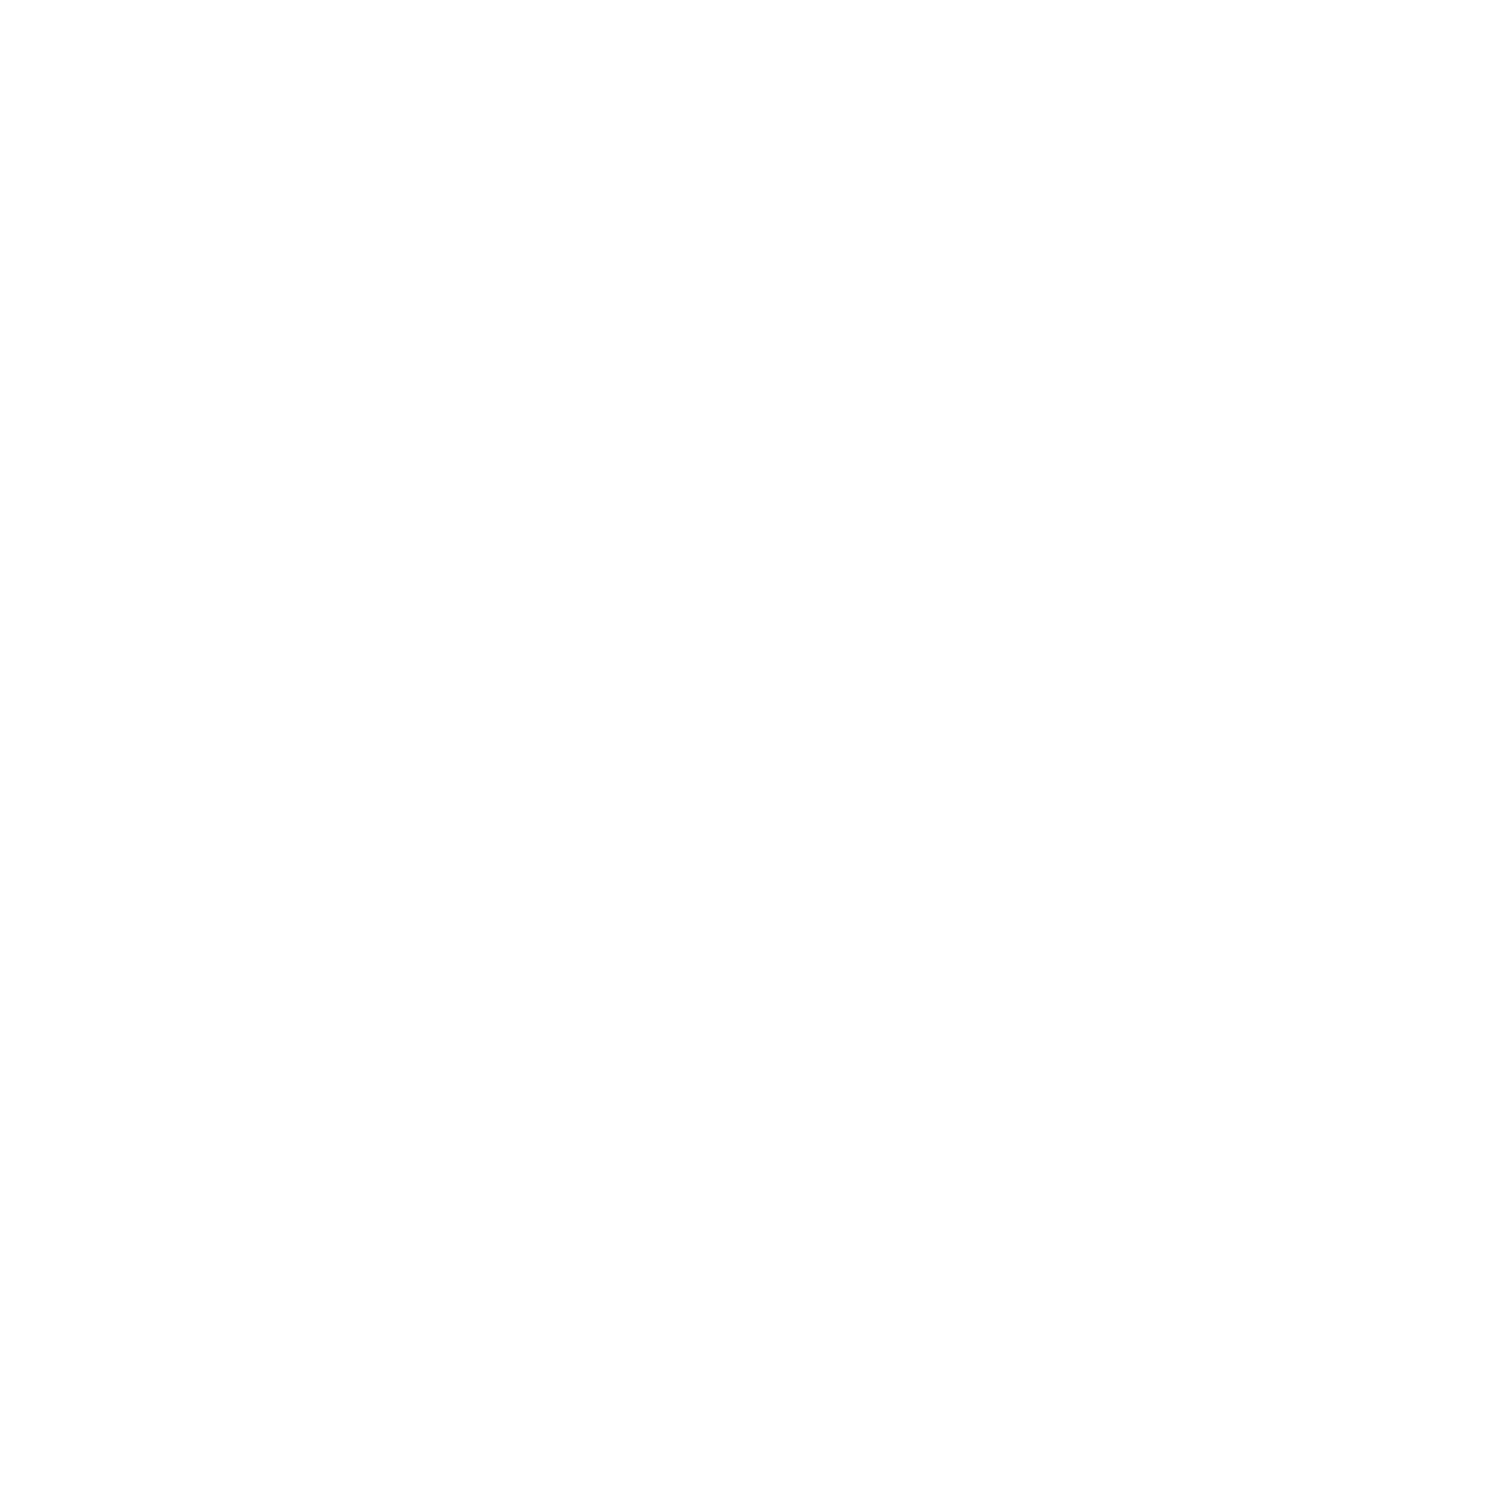 Matt Carter Group logo with text